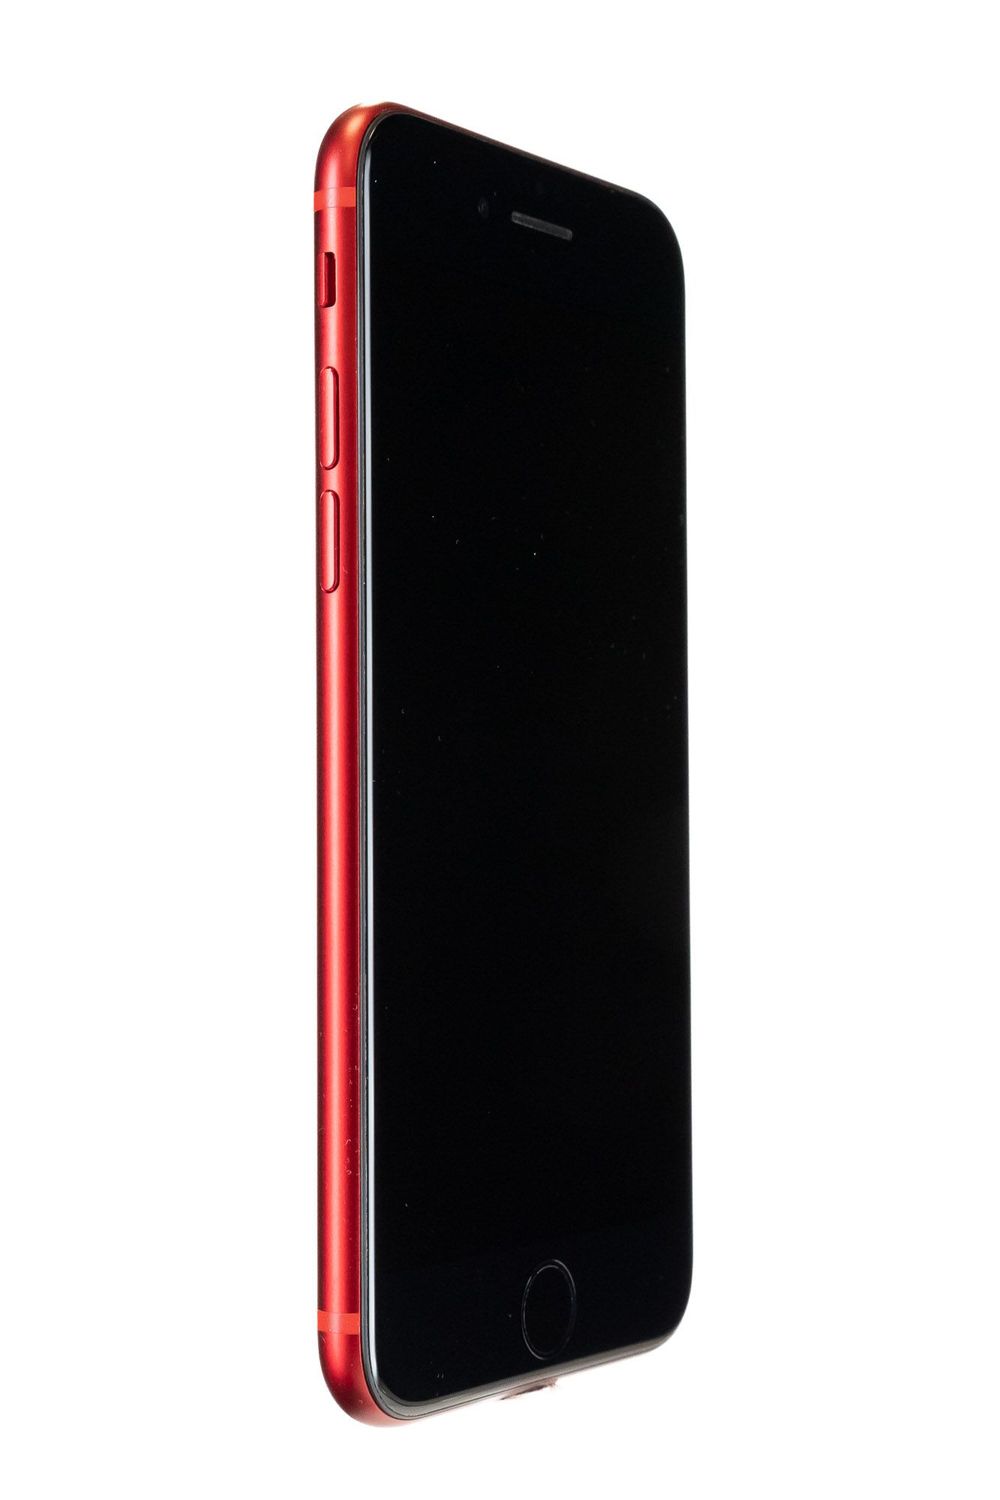 Κινητό τηλέφωνο Apple iPhone 8, Red, 64 GB, Bun